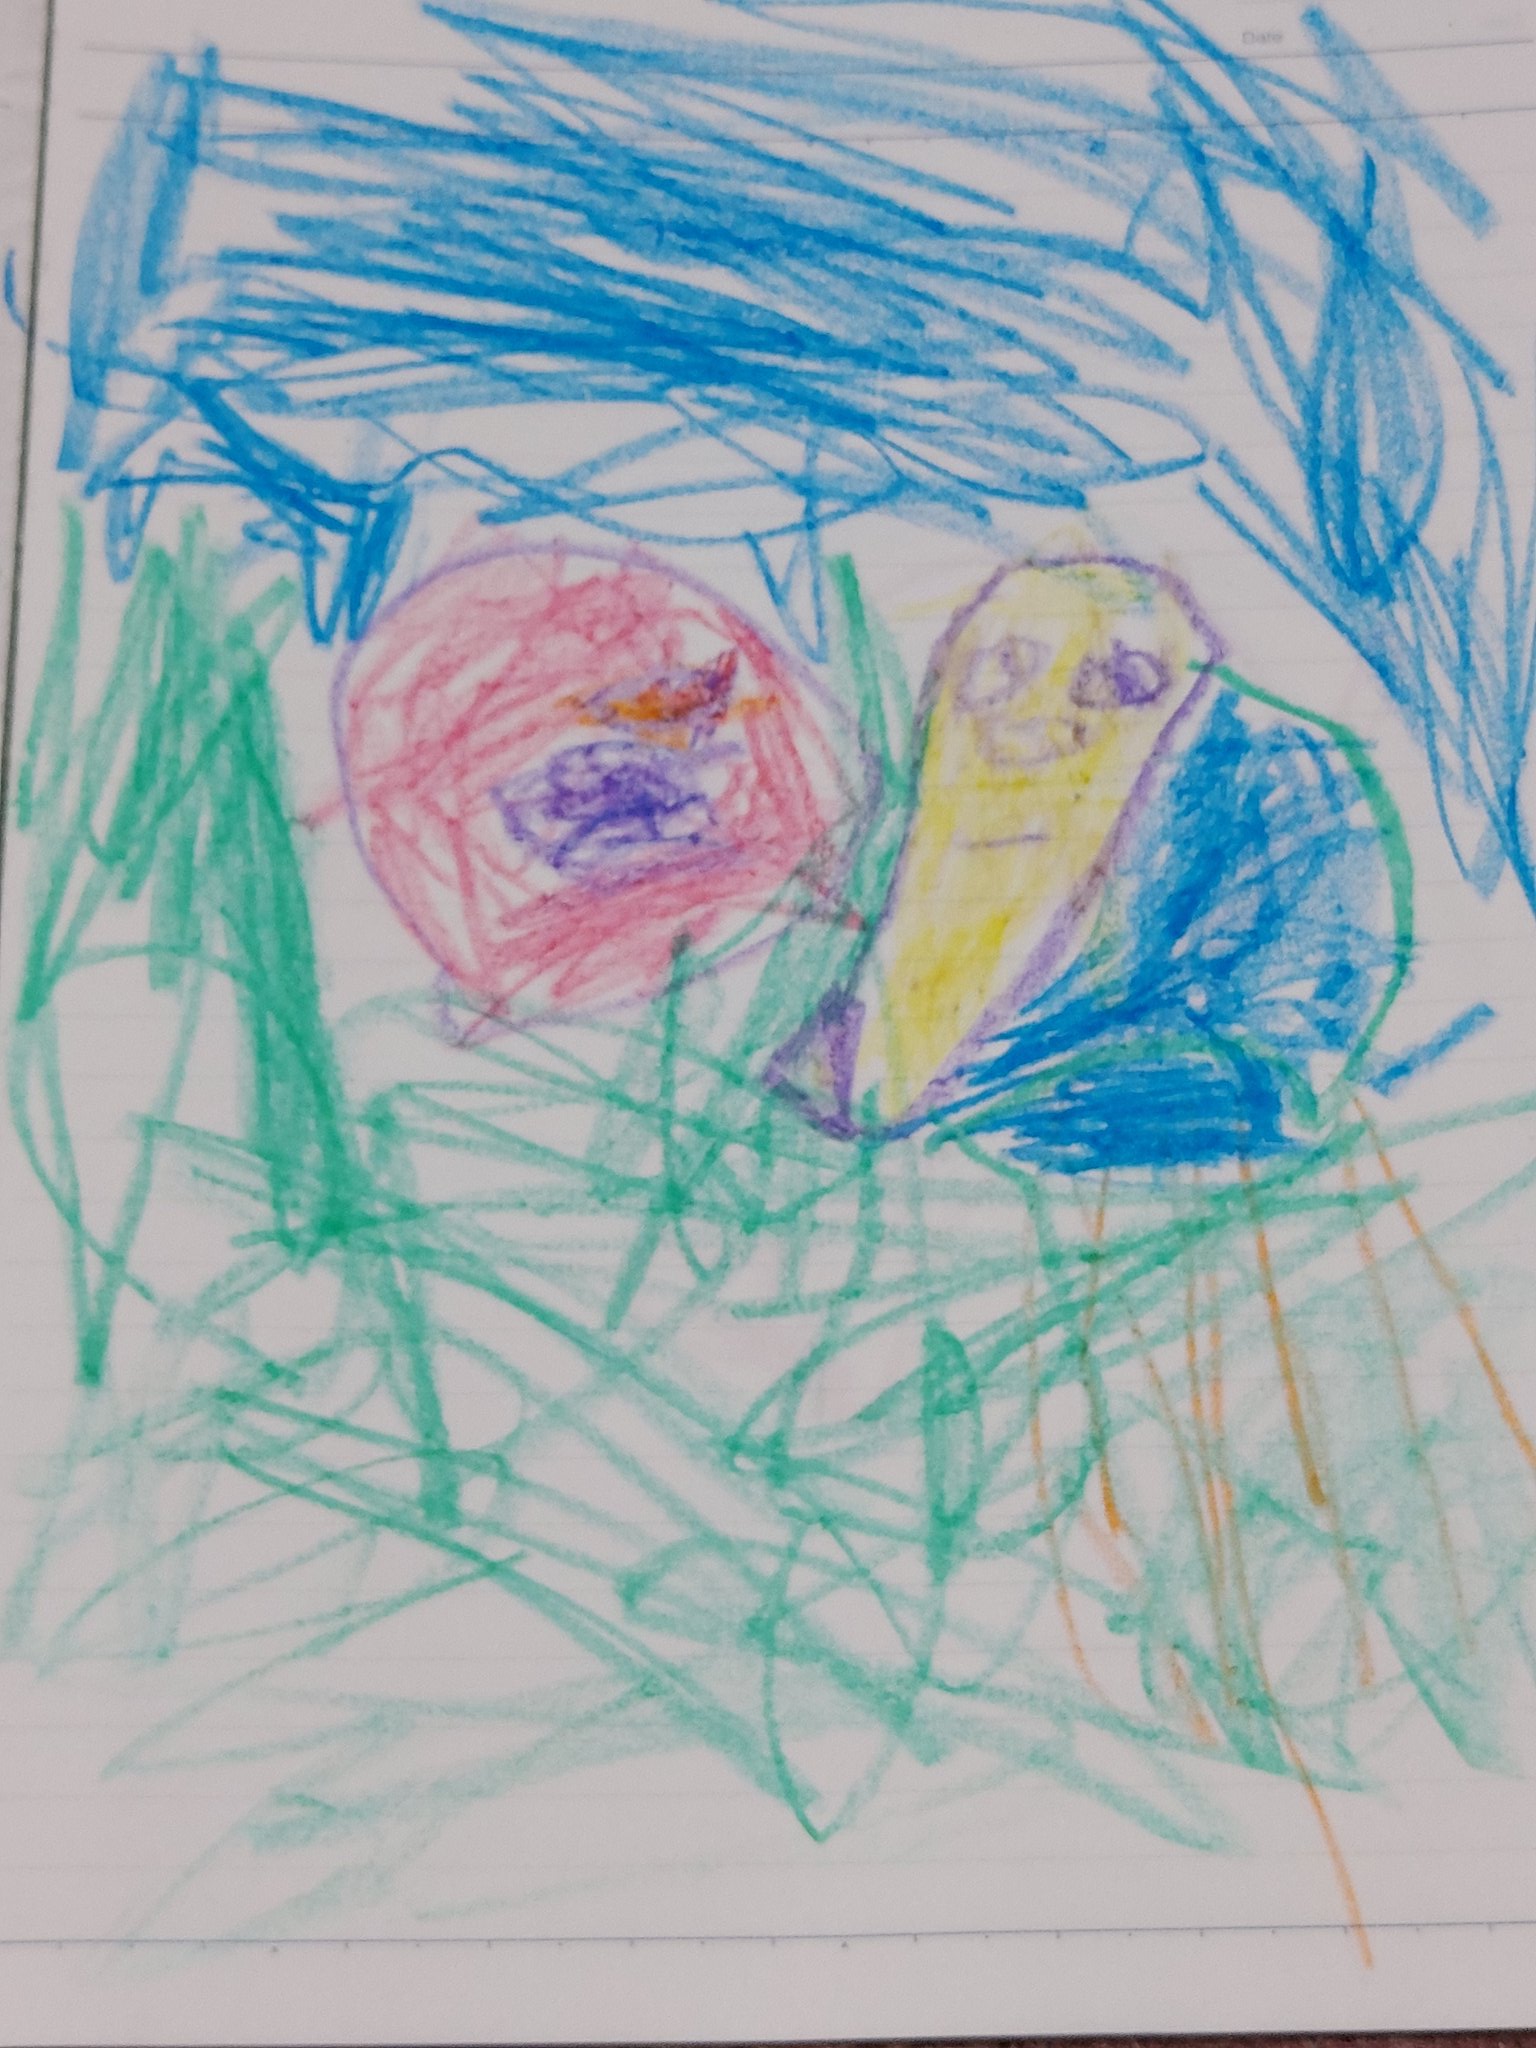 ハル 3歳の娘が絵を描いてる 子供の描いた絵には 感動しかない 色使いとその発想力には大人にはなくなったものを感じる 子供の絵 子供の描いた絵 3歳児の絵 3歳の絵 イラスト 子供が描く絵 T Co Kw3qzfbe1l Twitter